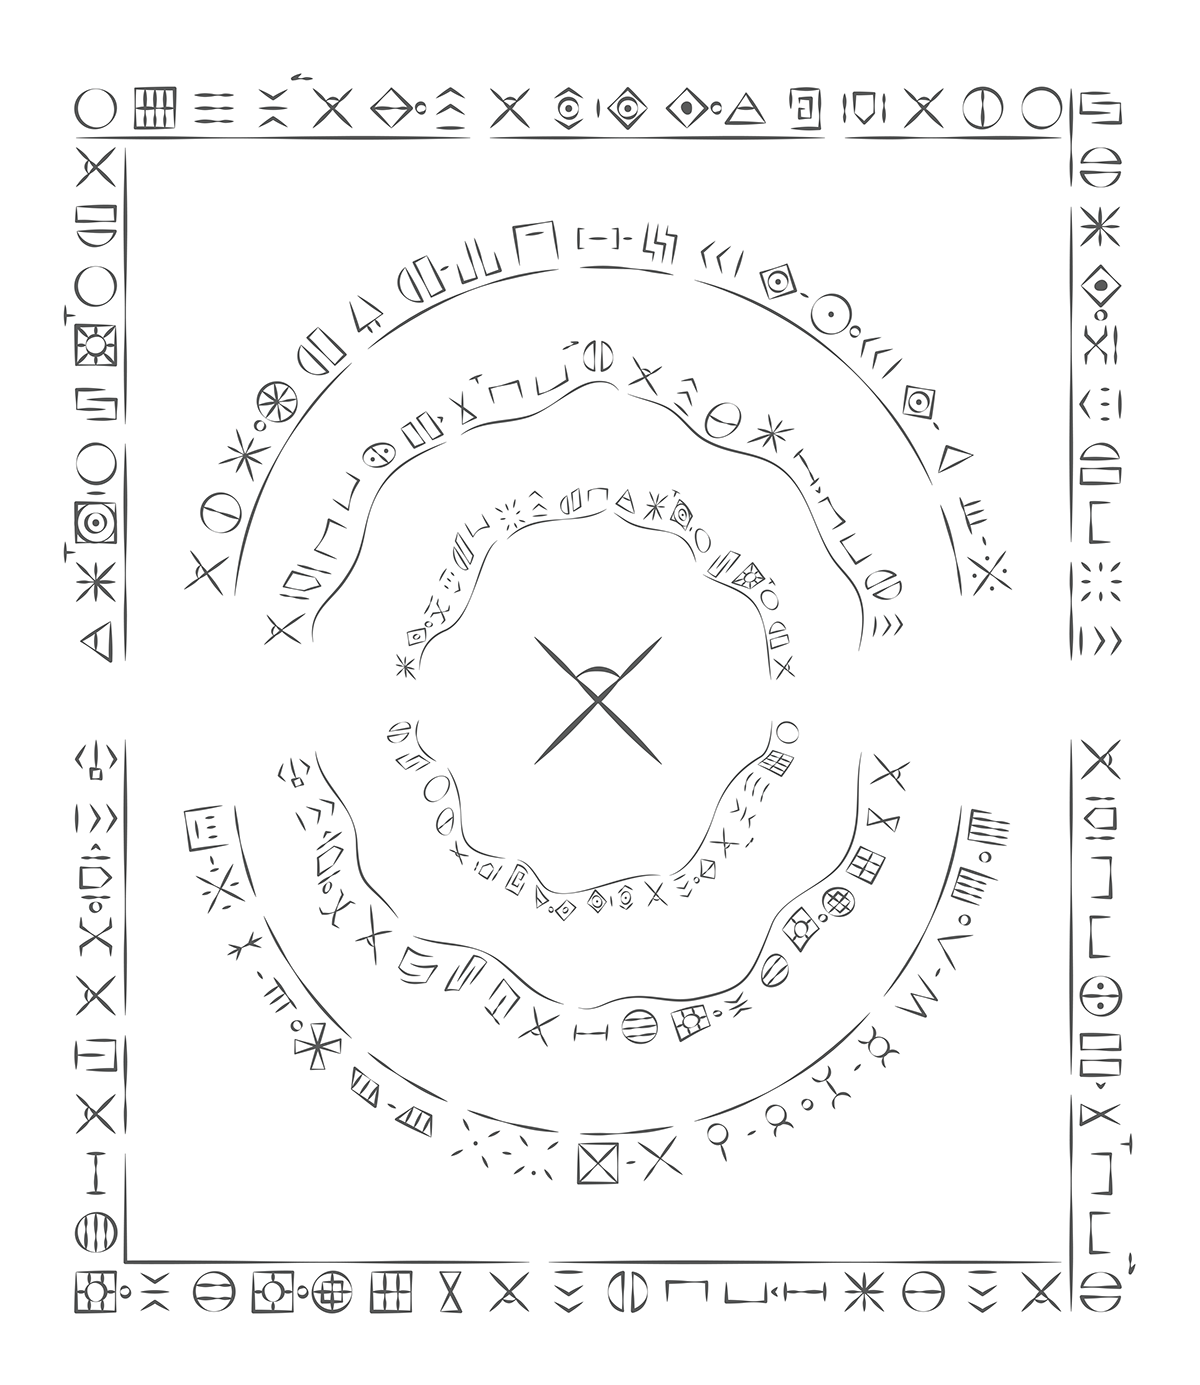 visual language symbols chinese mythology Ancient sacred giant pattern